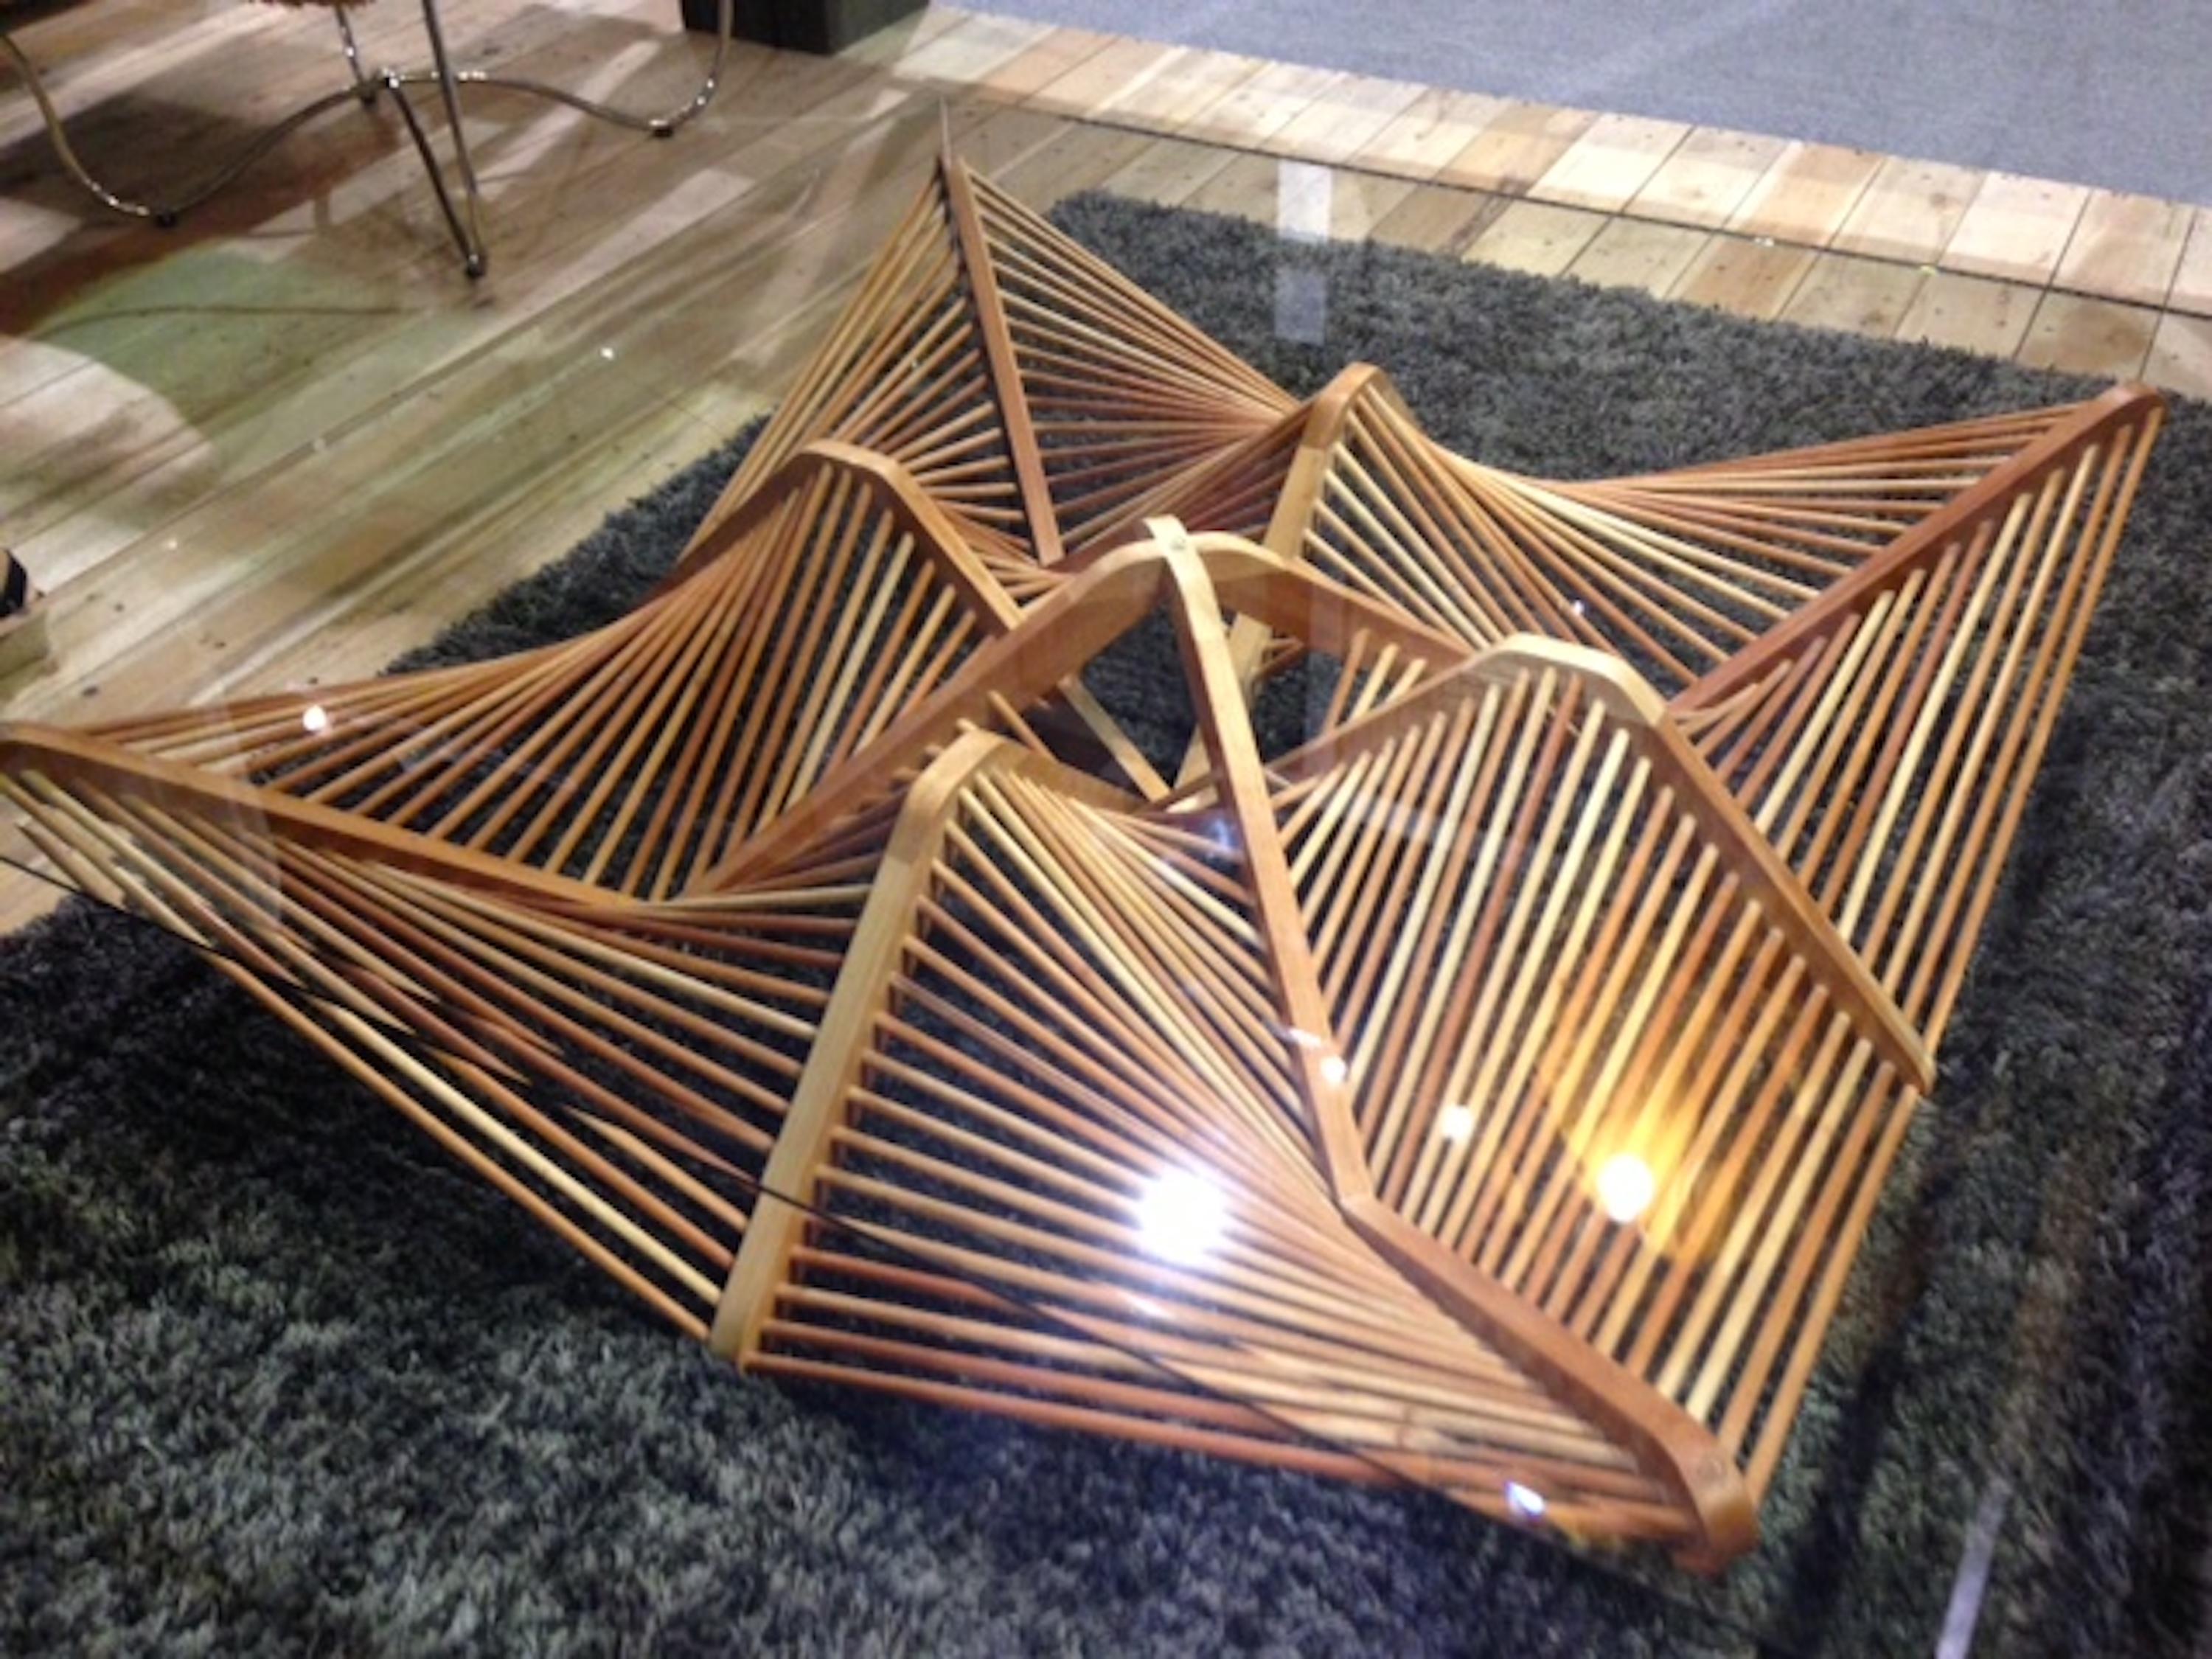 Ce design innovant, conçu par Vito Selma, présente un arrangement captivant de formes géométriques fabriquées en bois de lauan. Le réseau audacieux de formes interconnectées ajoute un élément d'intrigue à l'ensemble du design. Avec sa construction